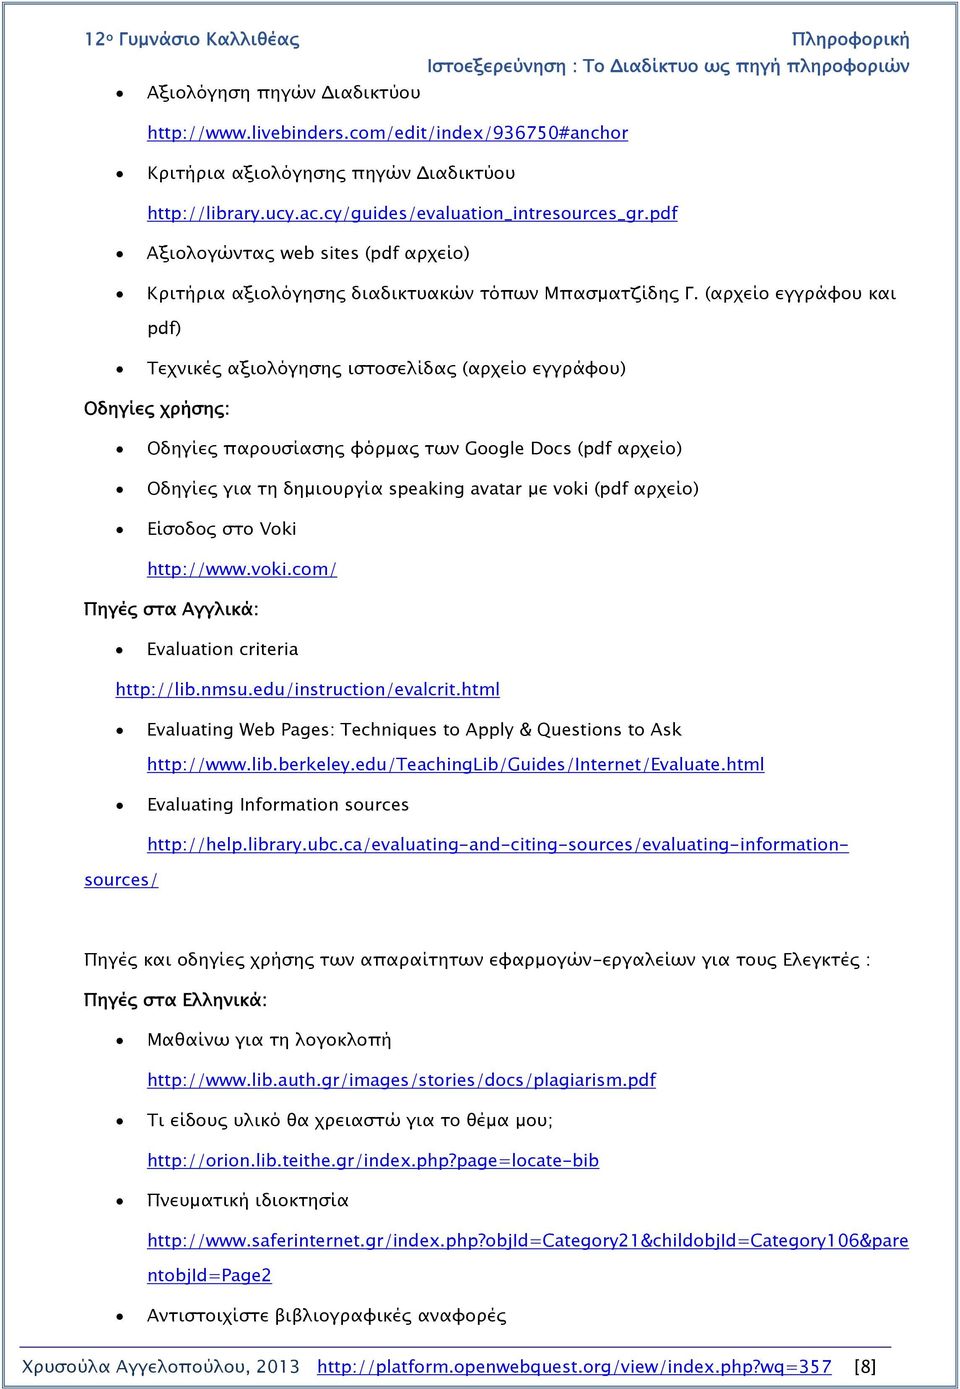 (αρχείο εγγράφου και pdf) Τεχνικές αξιολόγησης ιστοσελίδας (αρχείο εγγράφου) Οδηγίες χρήσης: Οδηγίες παρουσίασης φόρμας των Google Docs (pdf αρχείο) Οδηγίες για τη δημιουργία speaking avatar με voki